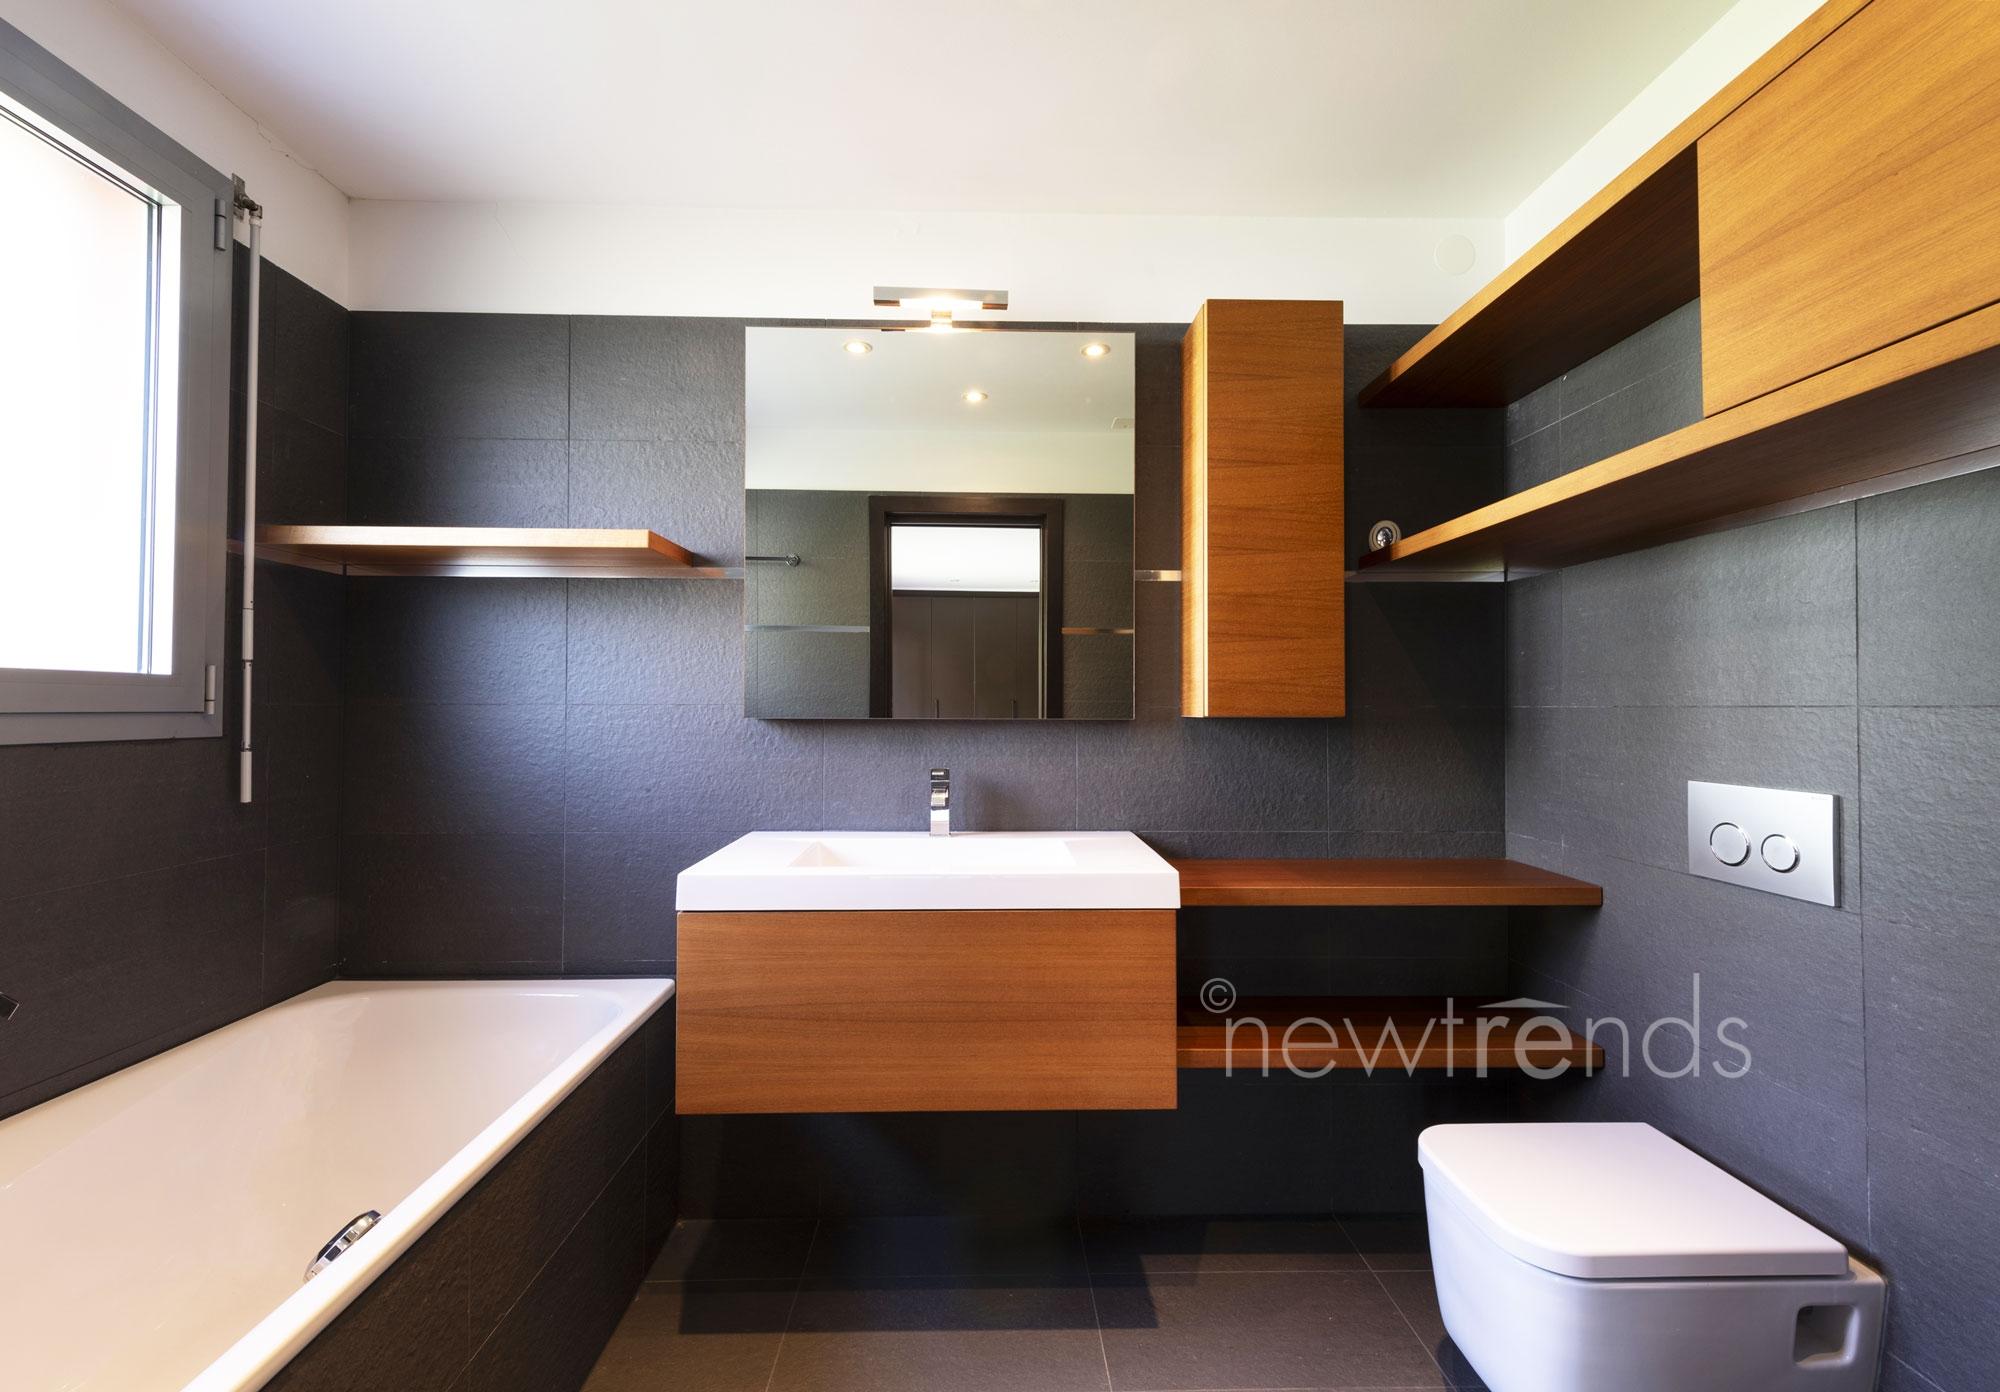 vendesi appartamento moderno ottimo prezzo con ampia terrazza coperta a gravesano: foto bagno con vasca